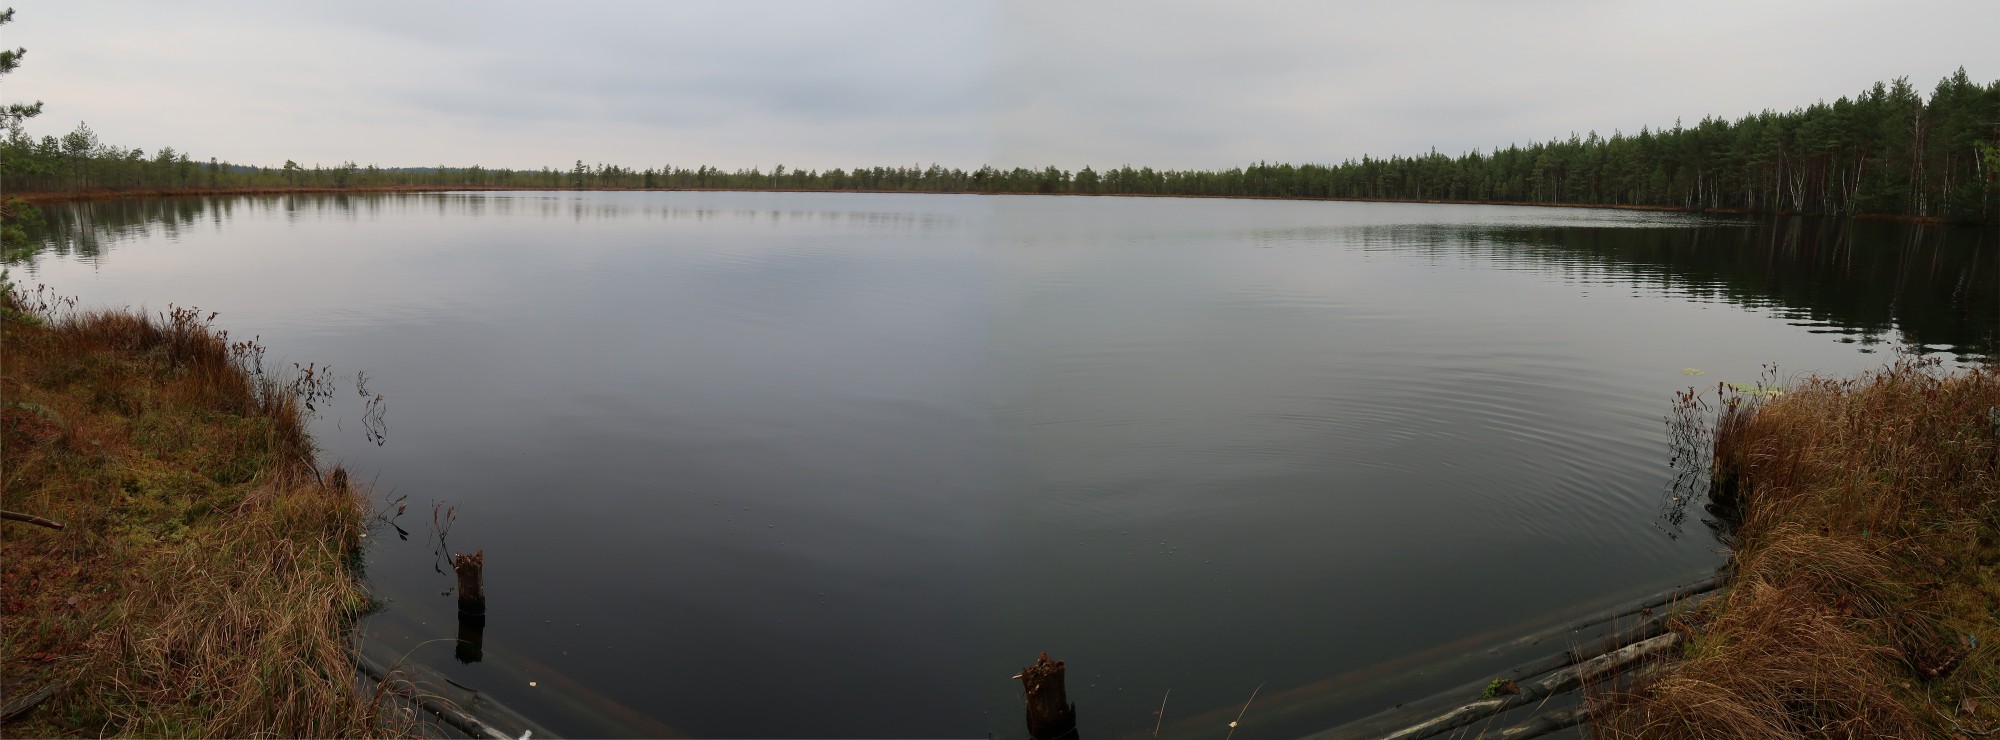 Озеро Щебериха Осташковский район